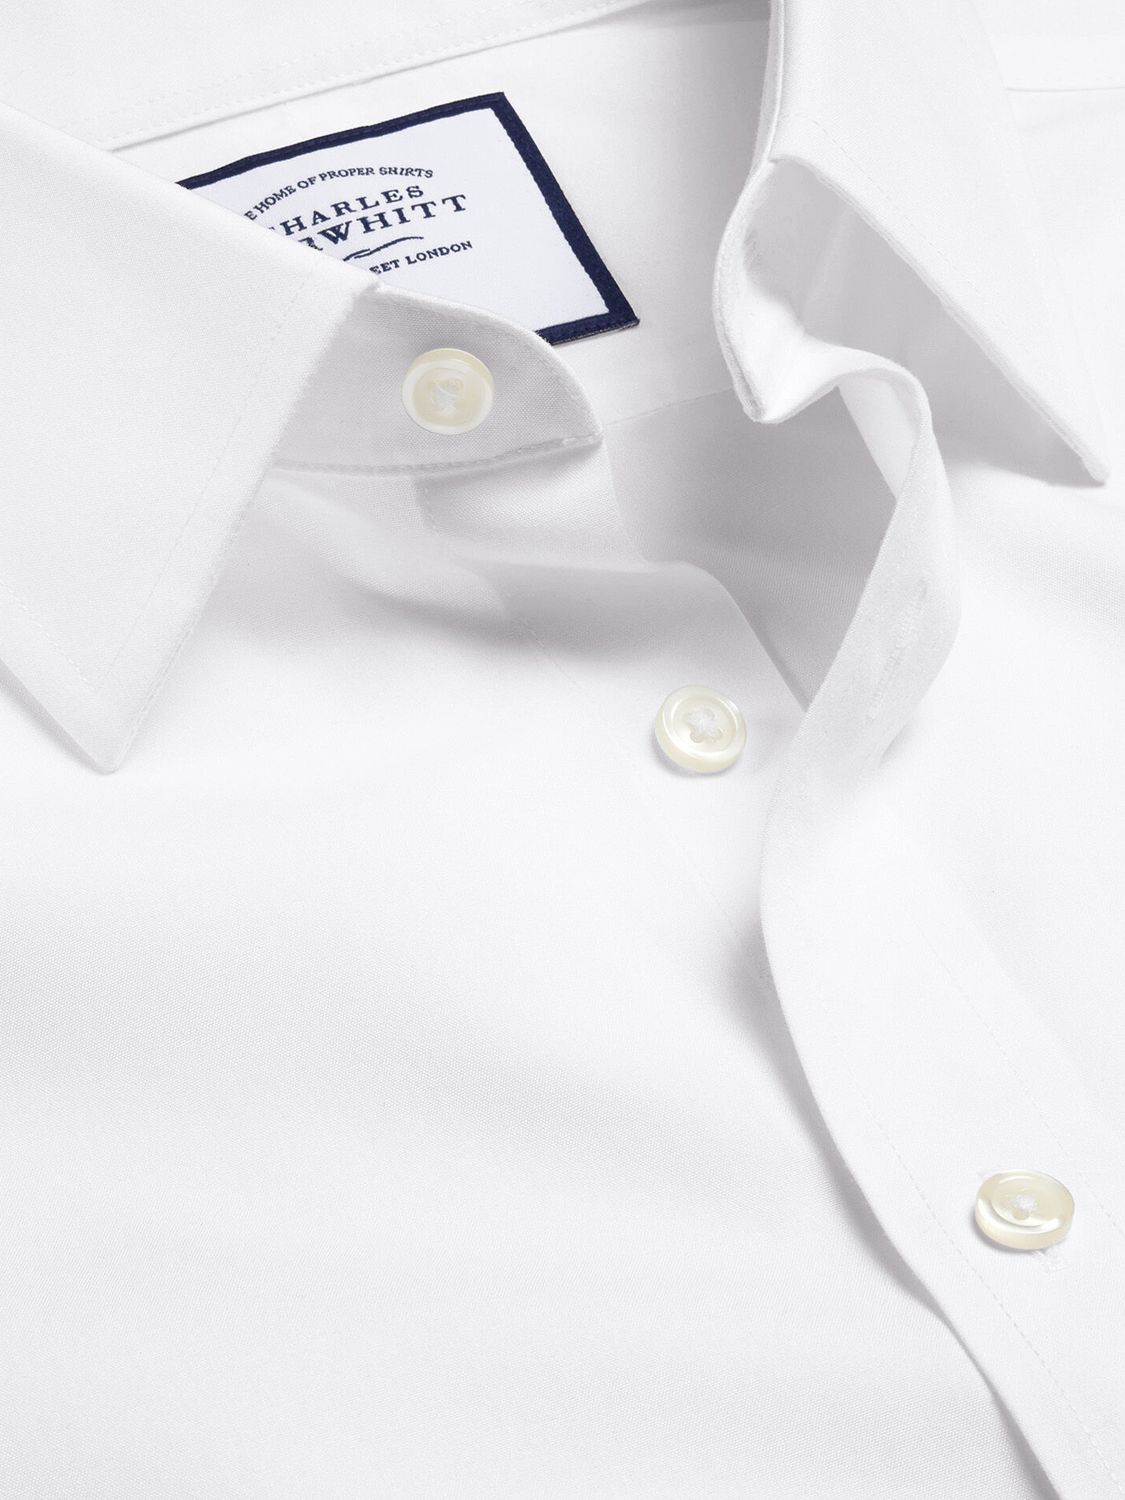 Charles Tyrwhitt Non-Iron Poplin Short-Sleeve Shirt, White, 14.5